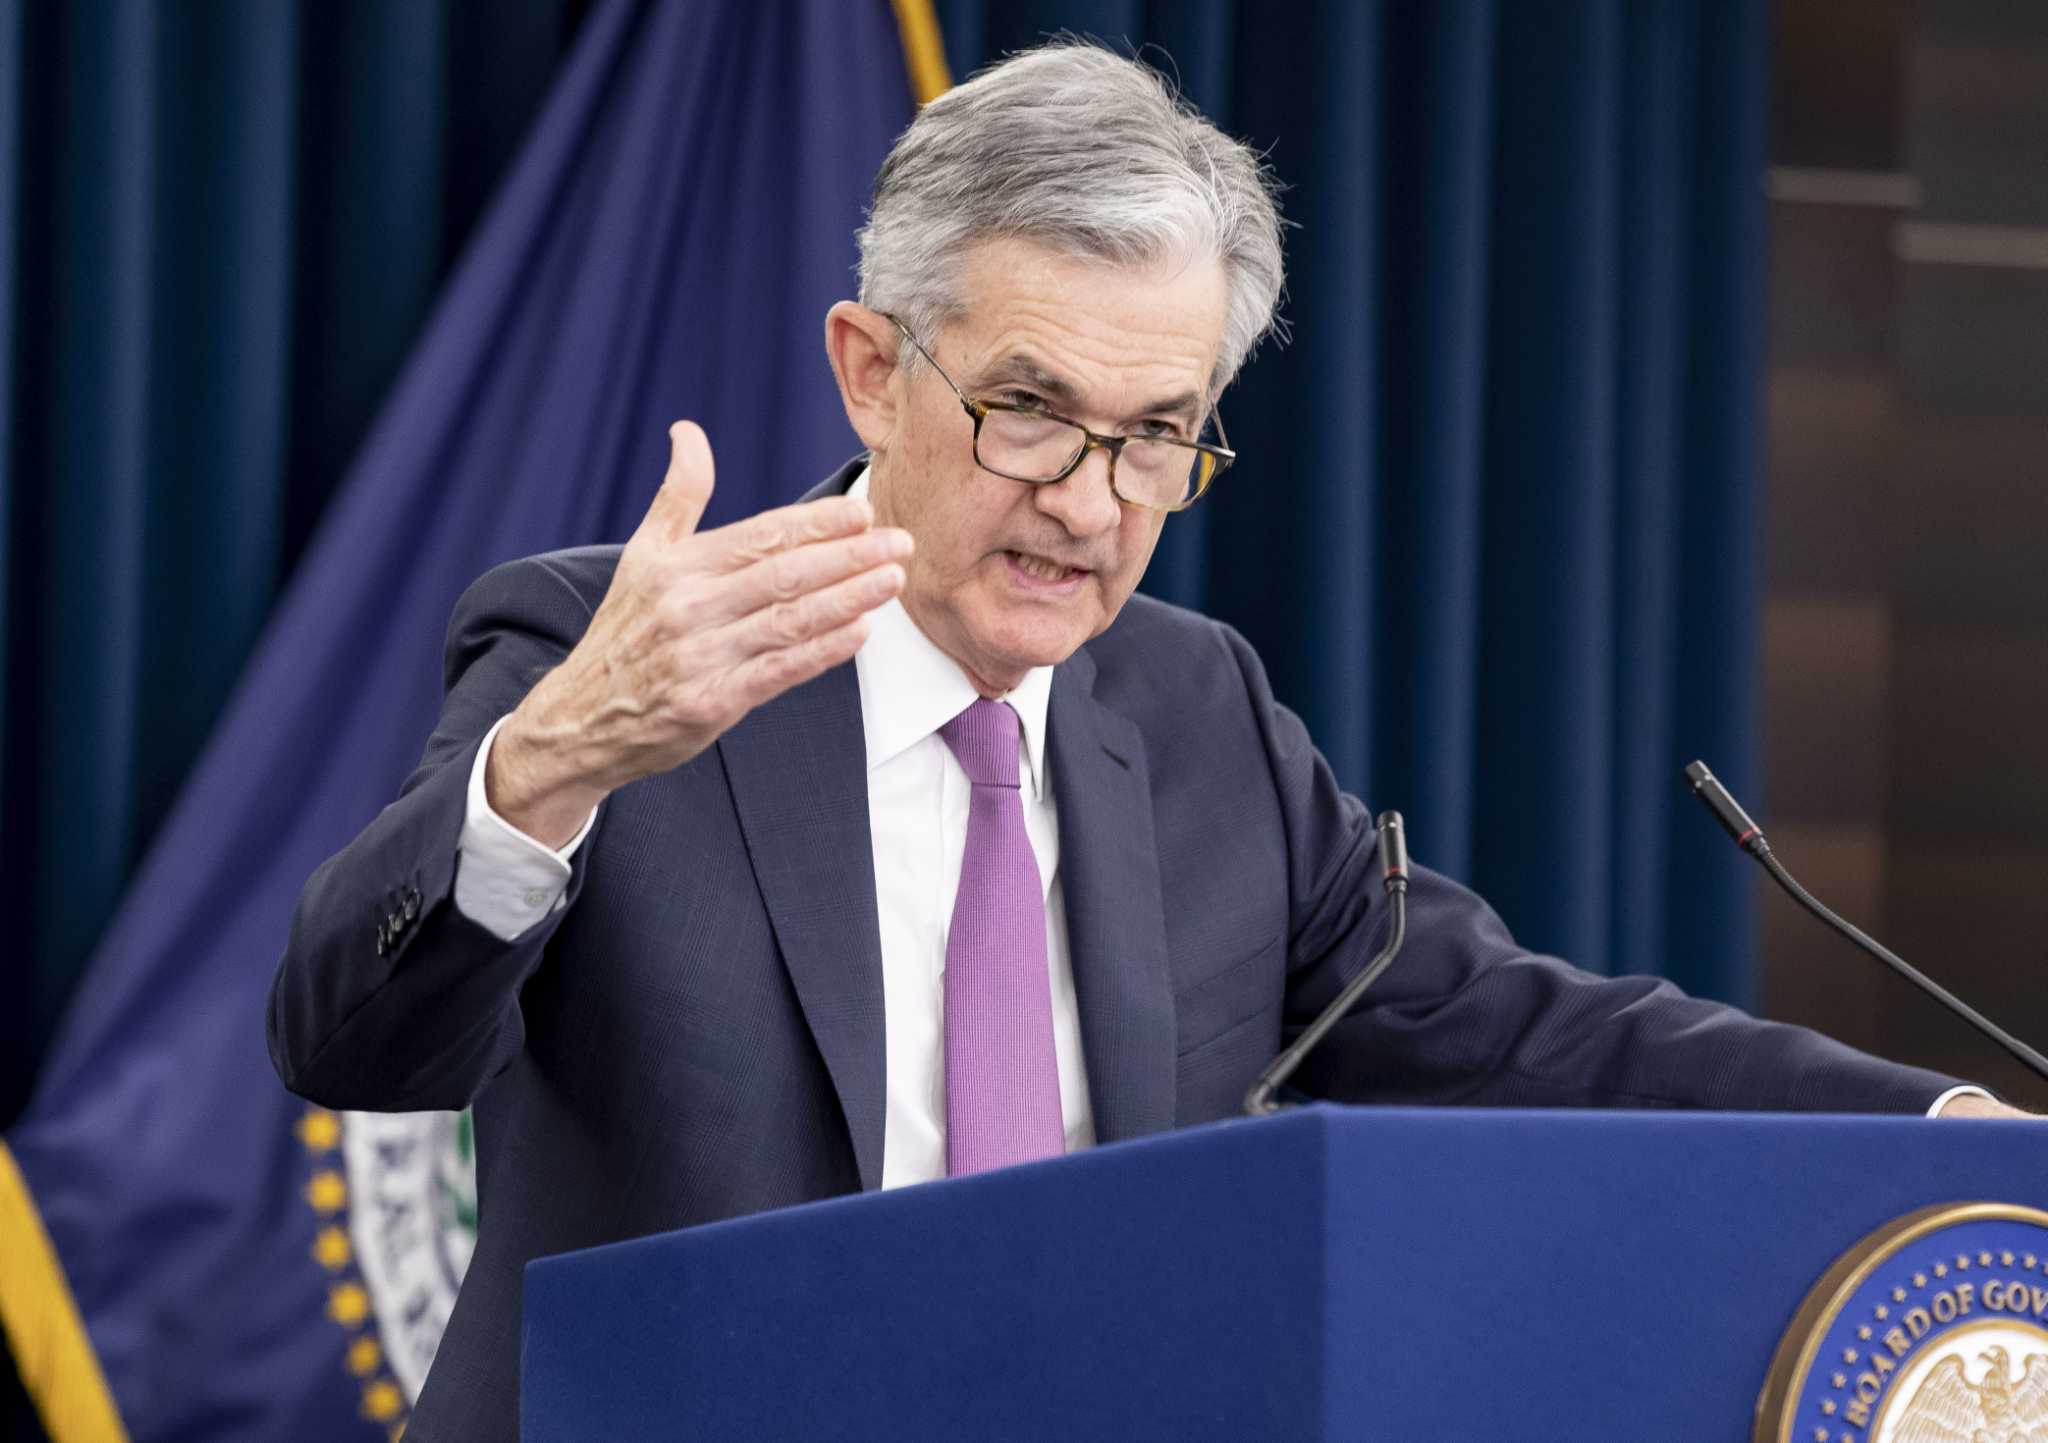 Недавнее выступление председателя Федеральной резервной системы Джерома Пауэлла на конференции в Джексон-Холле перед аудиторией руководителей центральных банков со всего мира было долгожданным событием. Сможет ли он осуществить "мягкую посадку", снизив инфляцию с сорокалетнего максимума в 9,1% до желаемых 2%, не вызвав при этом рецессии? 